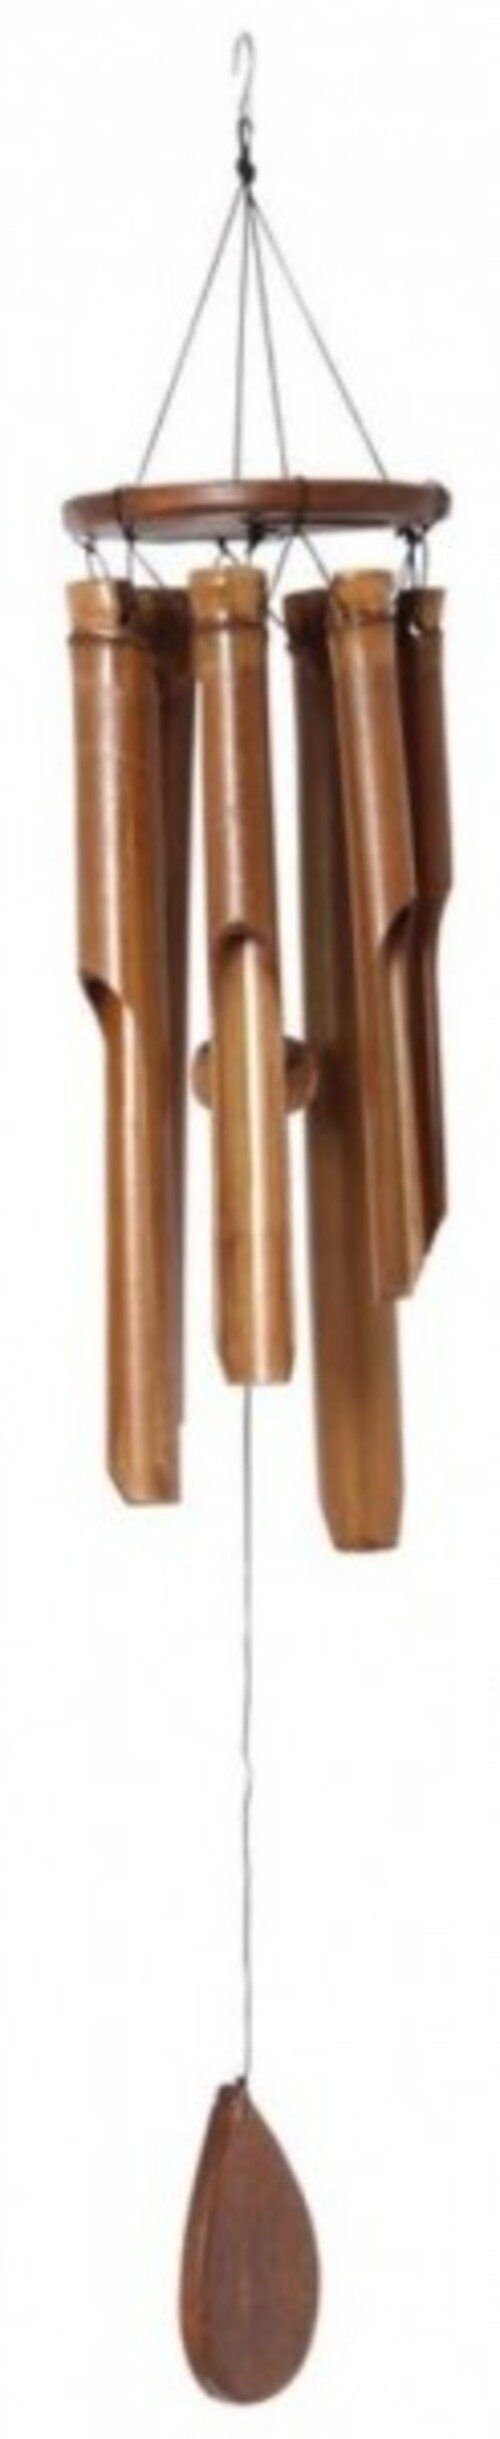 Bartl Modellbausatz Wind- und Klangspiel aus Bambus